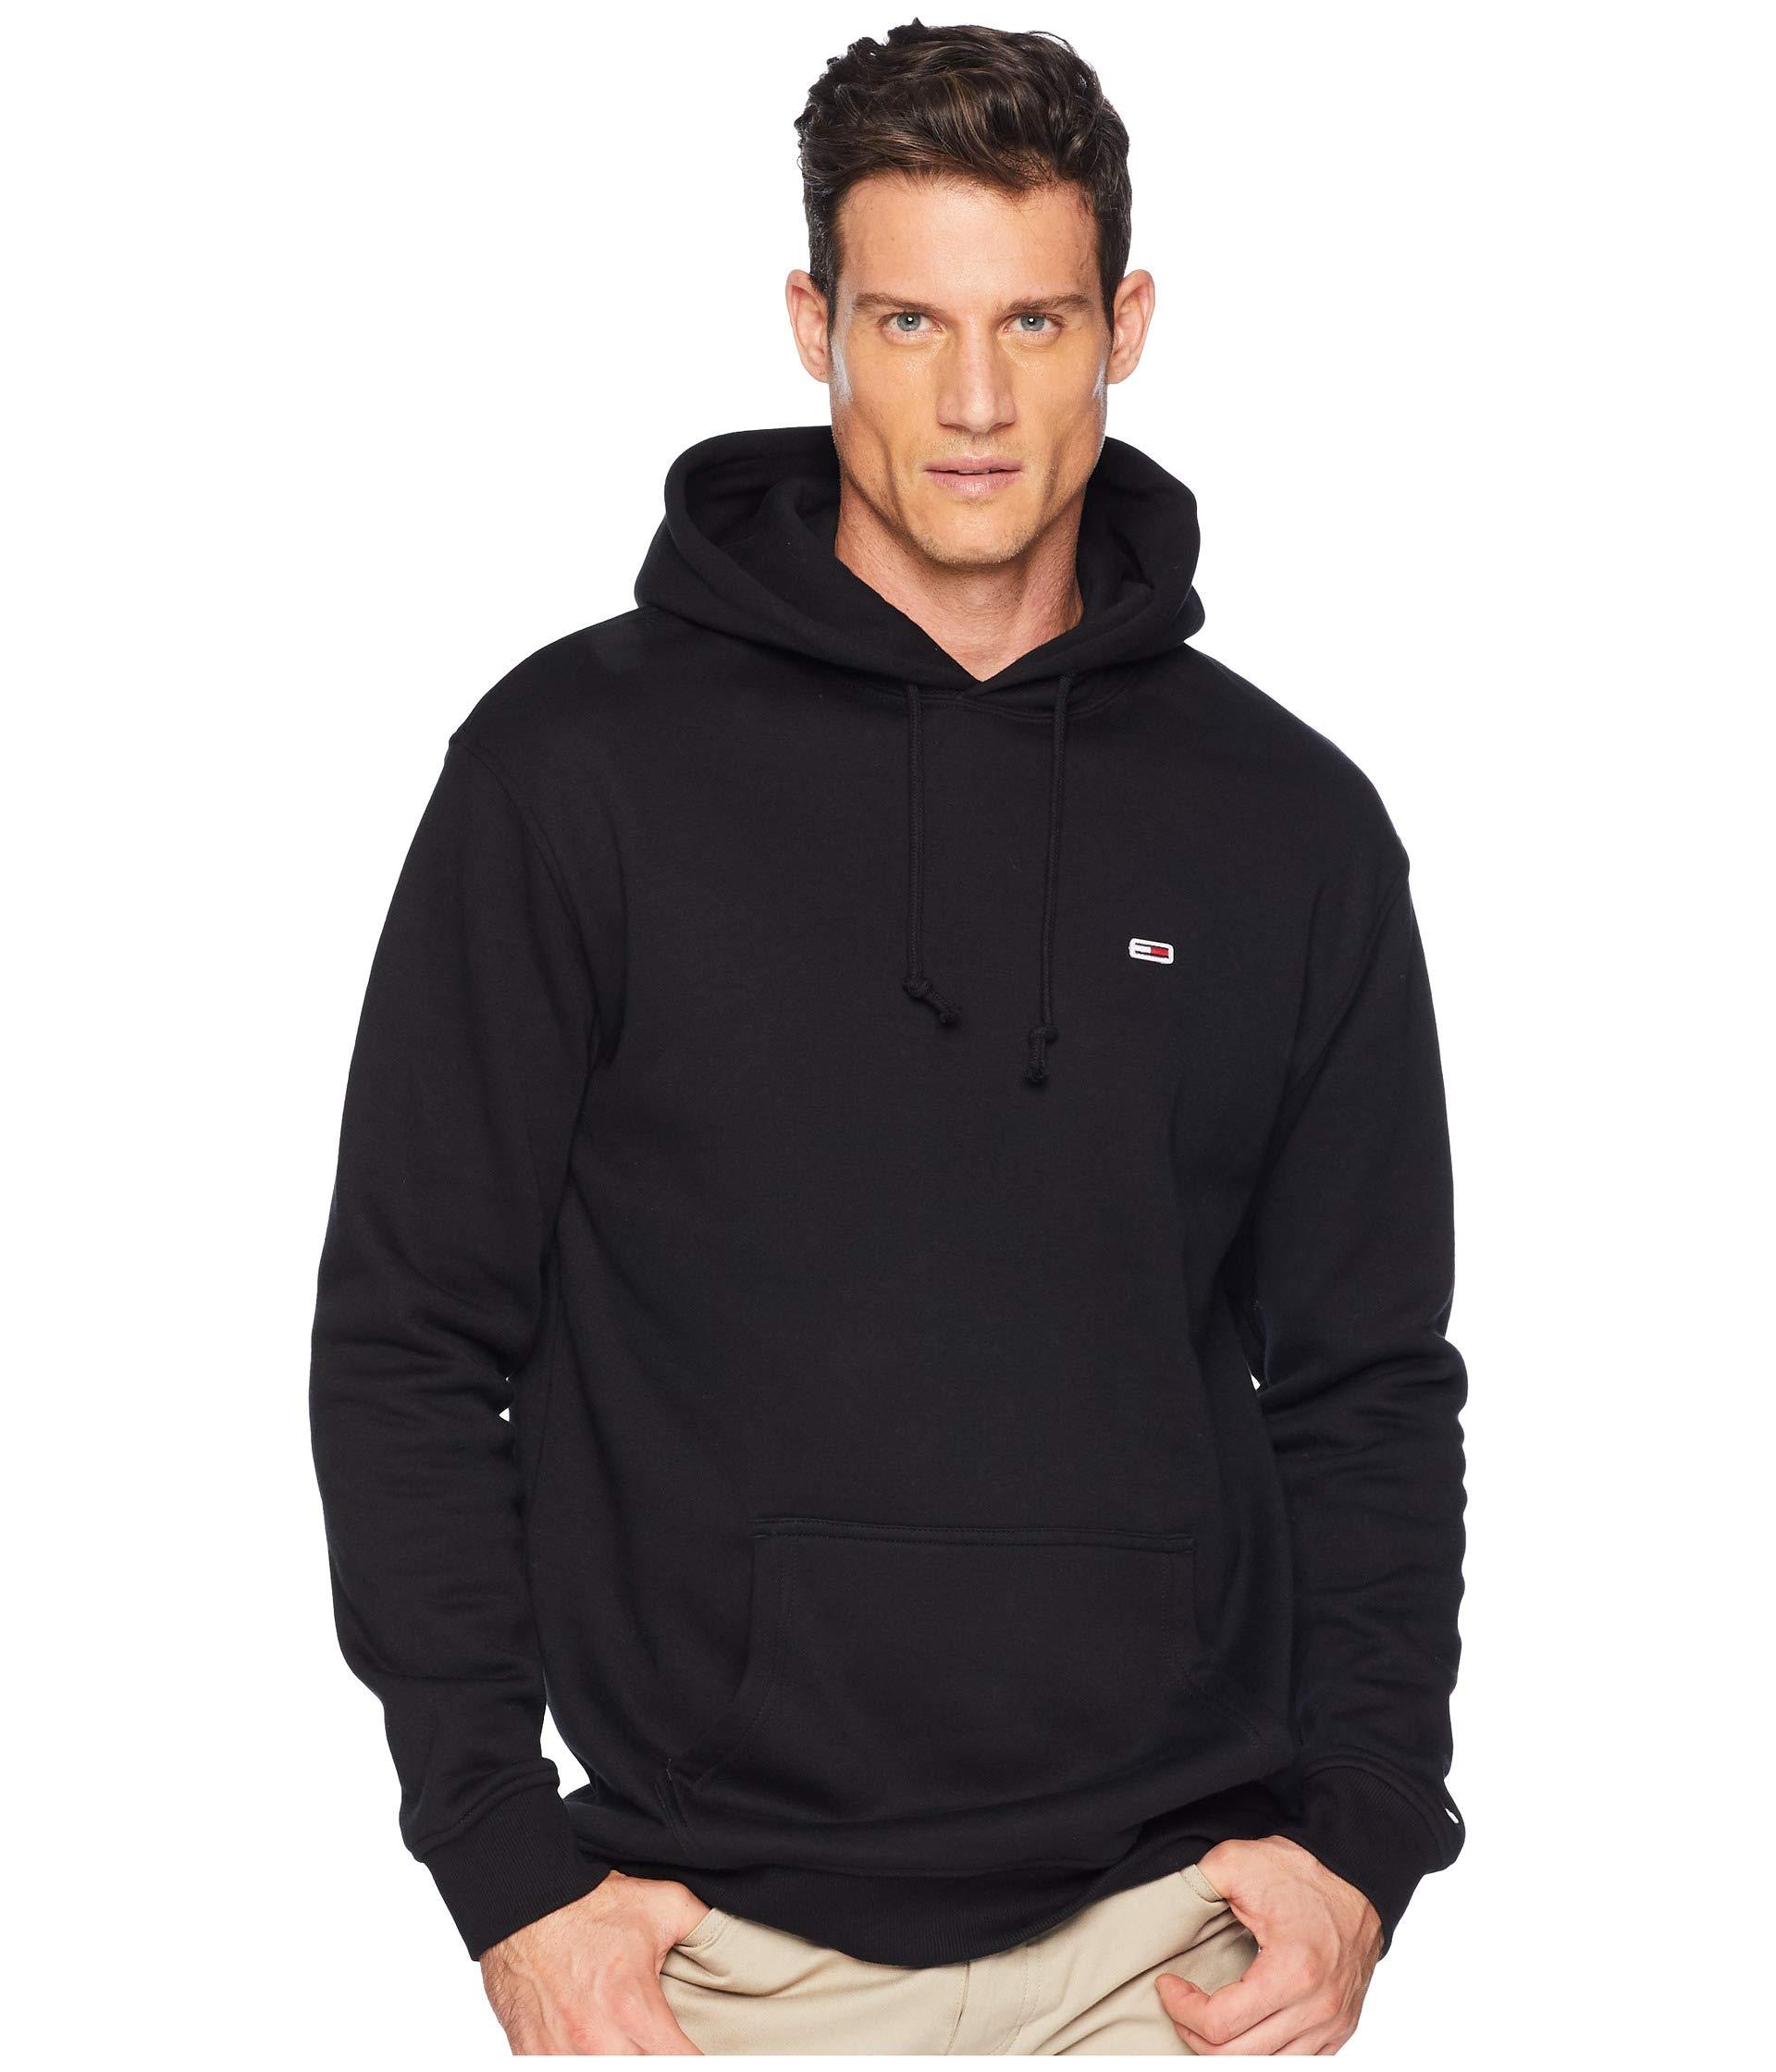 hilfiger hoodie black